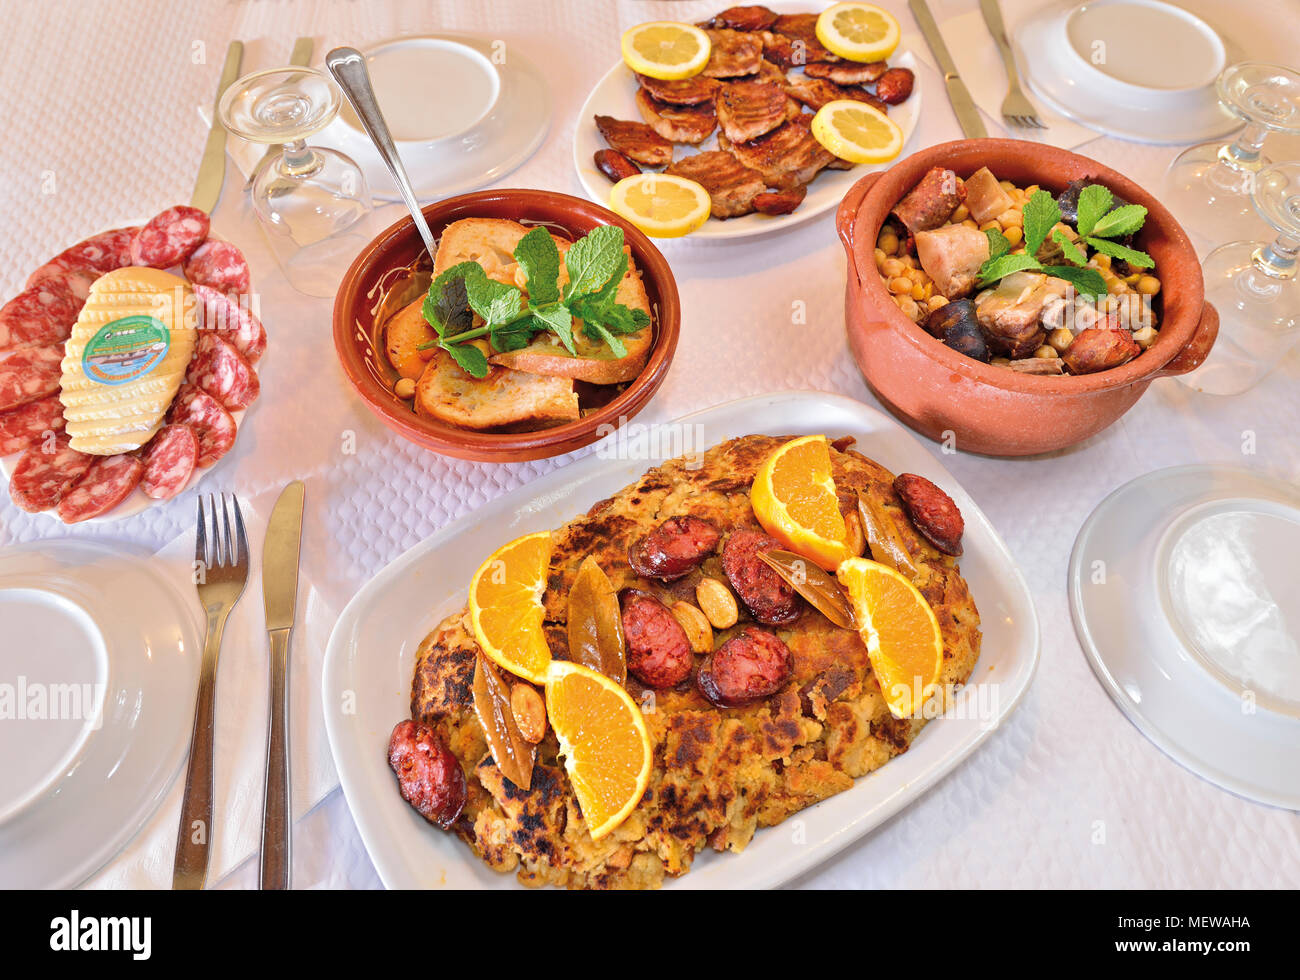 Table de restaurant avec des plats différents et campagne régionale gastronomie Banque D'Images